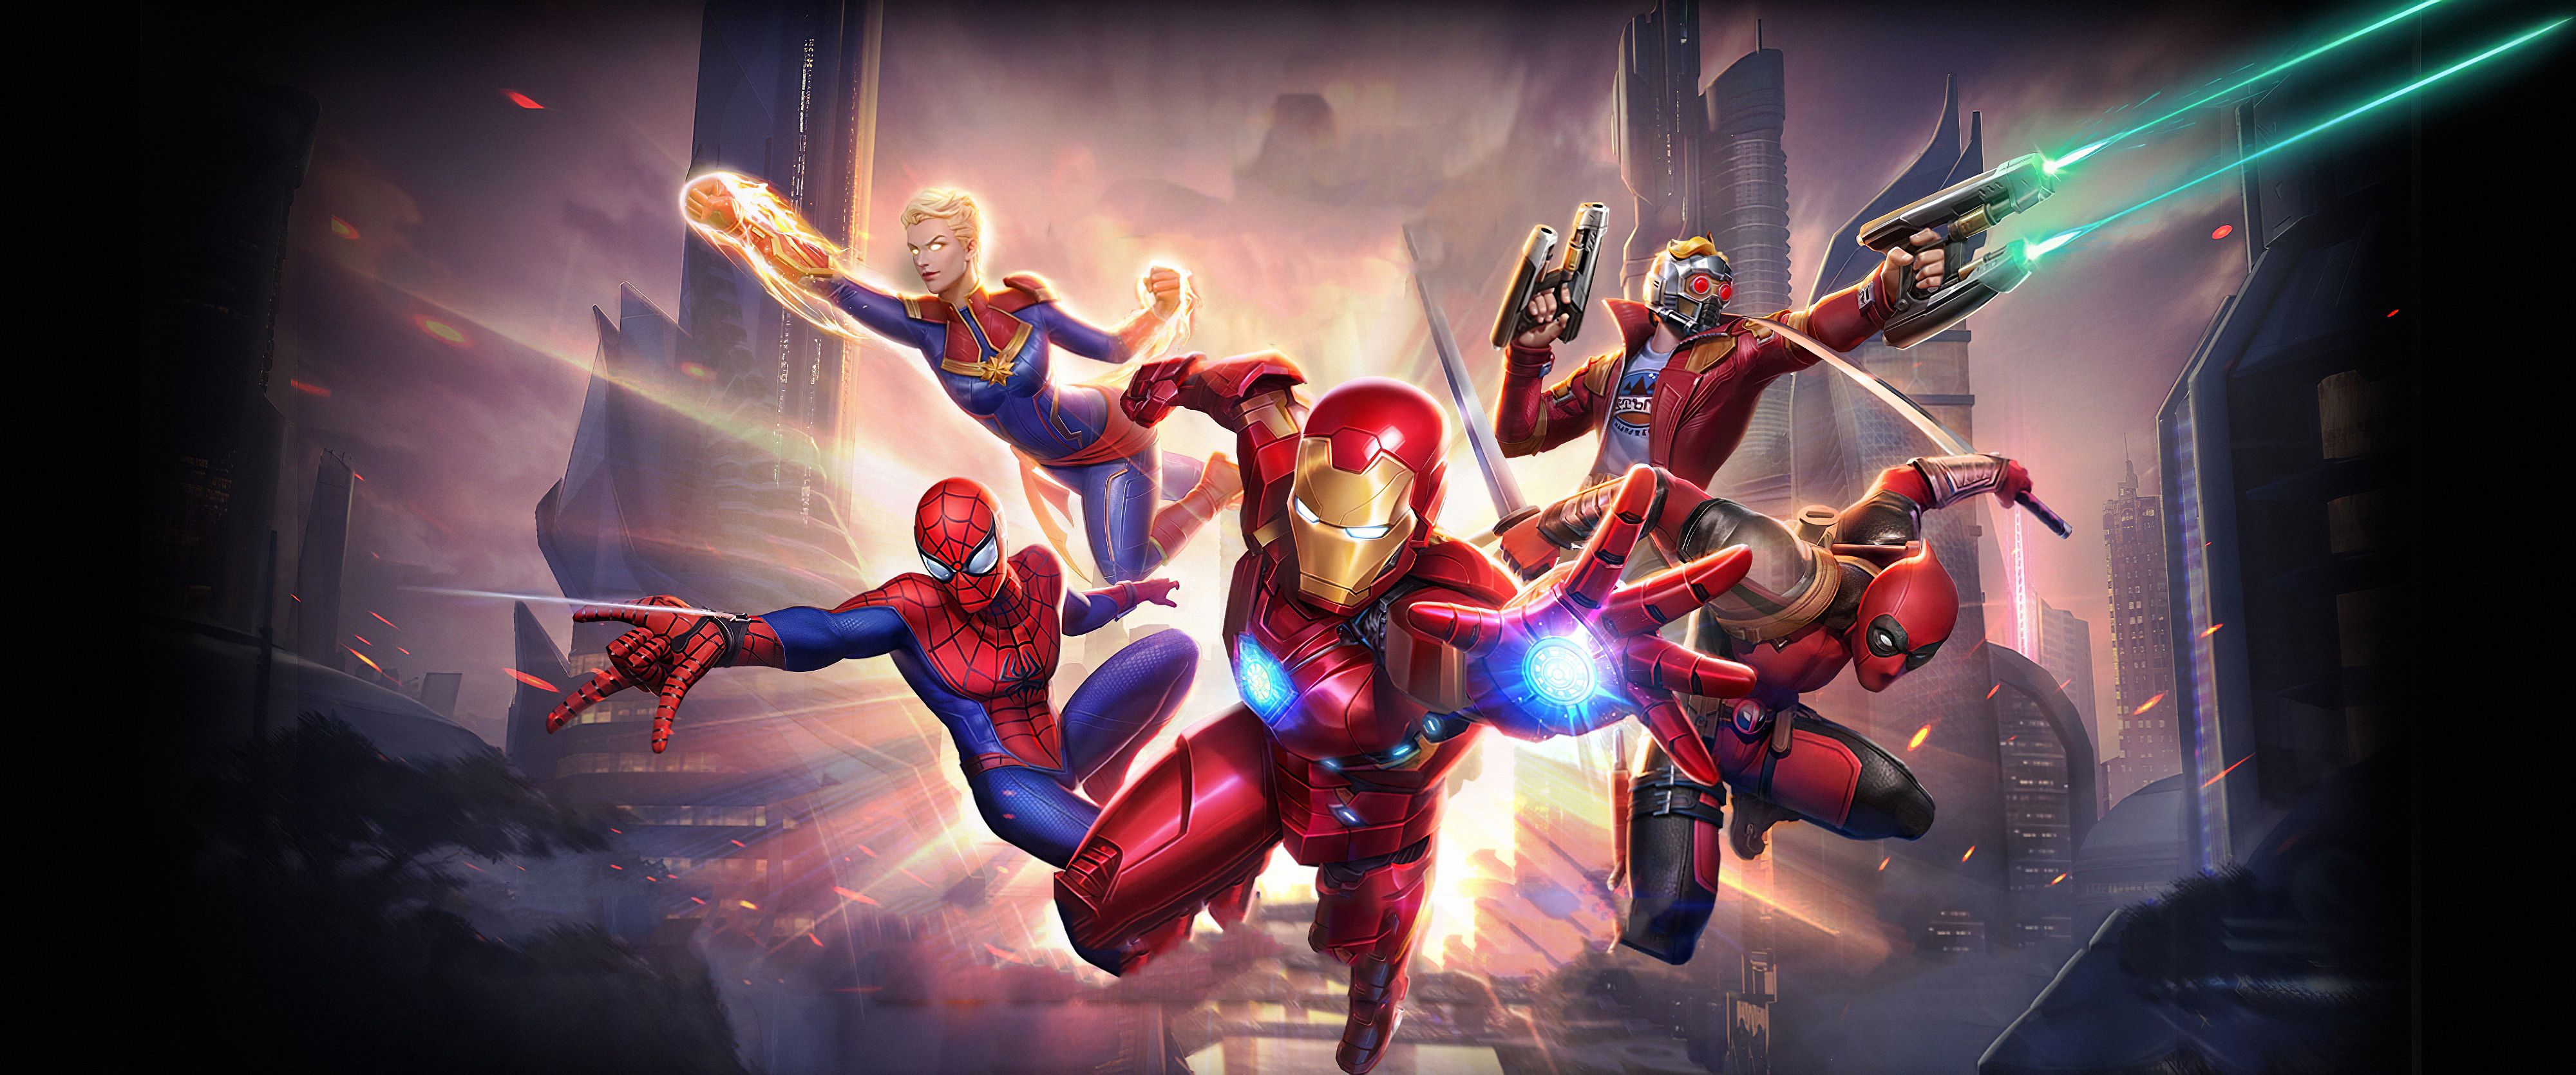 Video Game Marvel Super War HD Wallpaper | Background Image